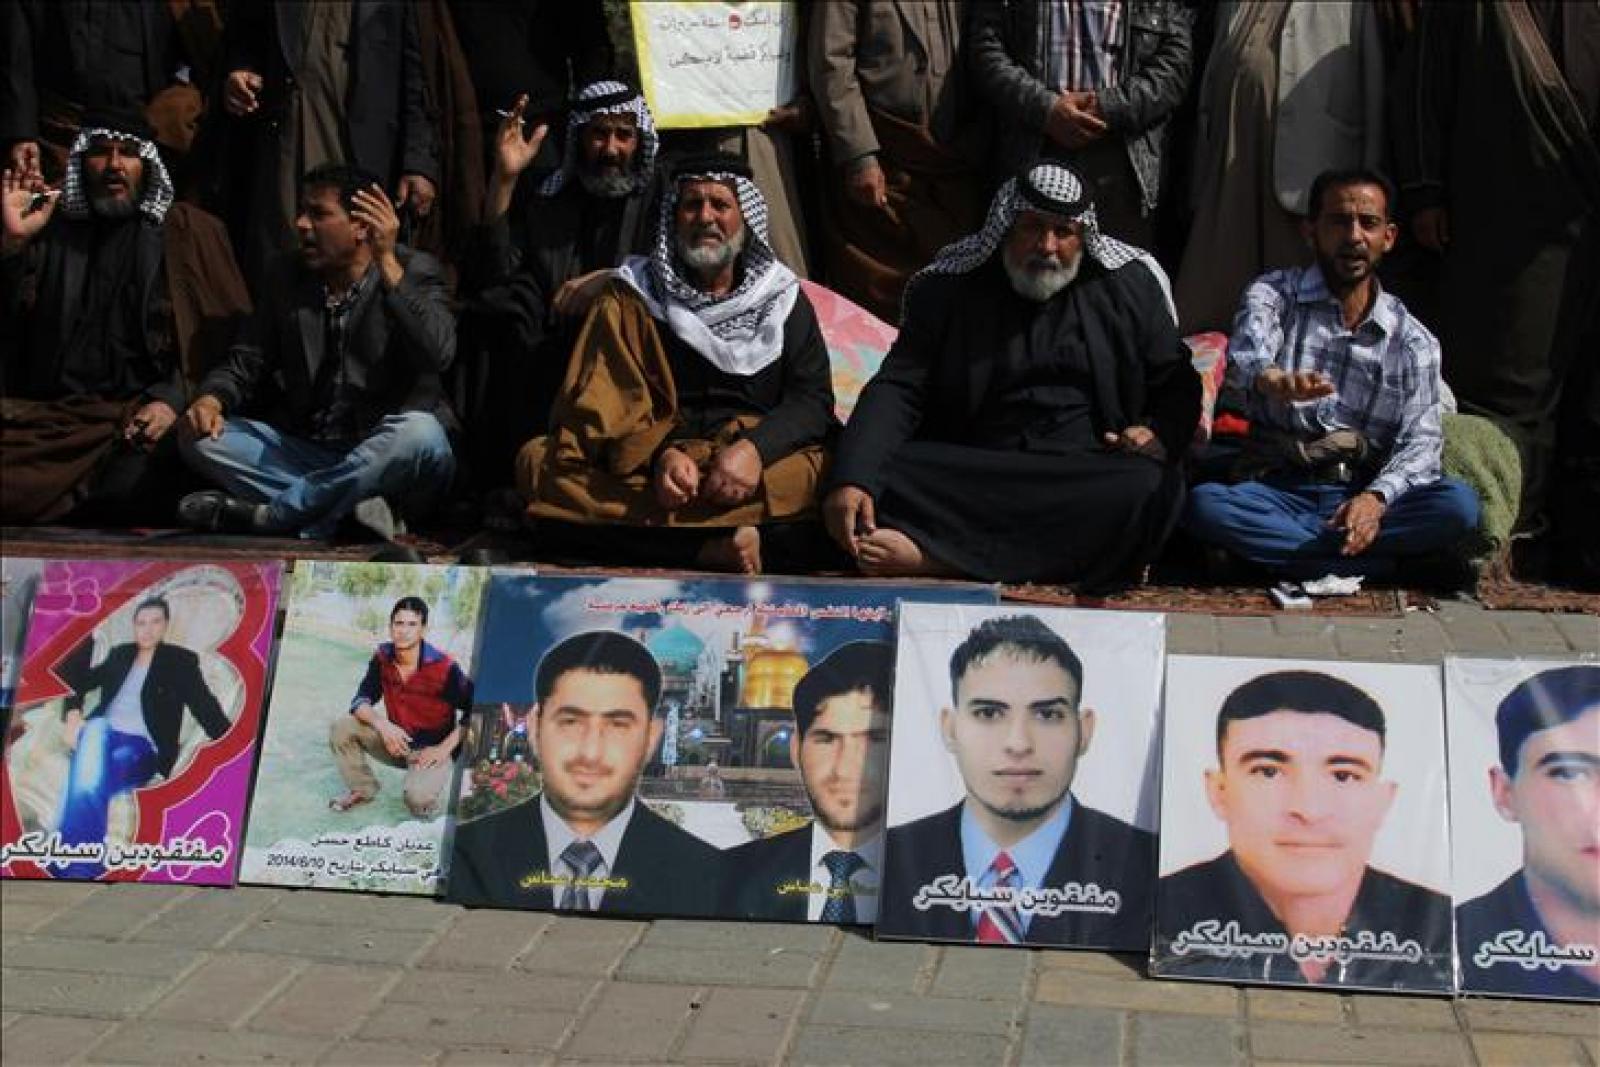  Iraqis protest over 'Speicher massacre'